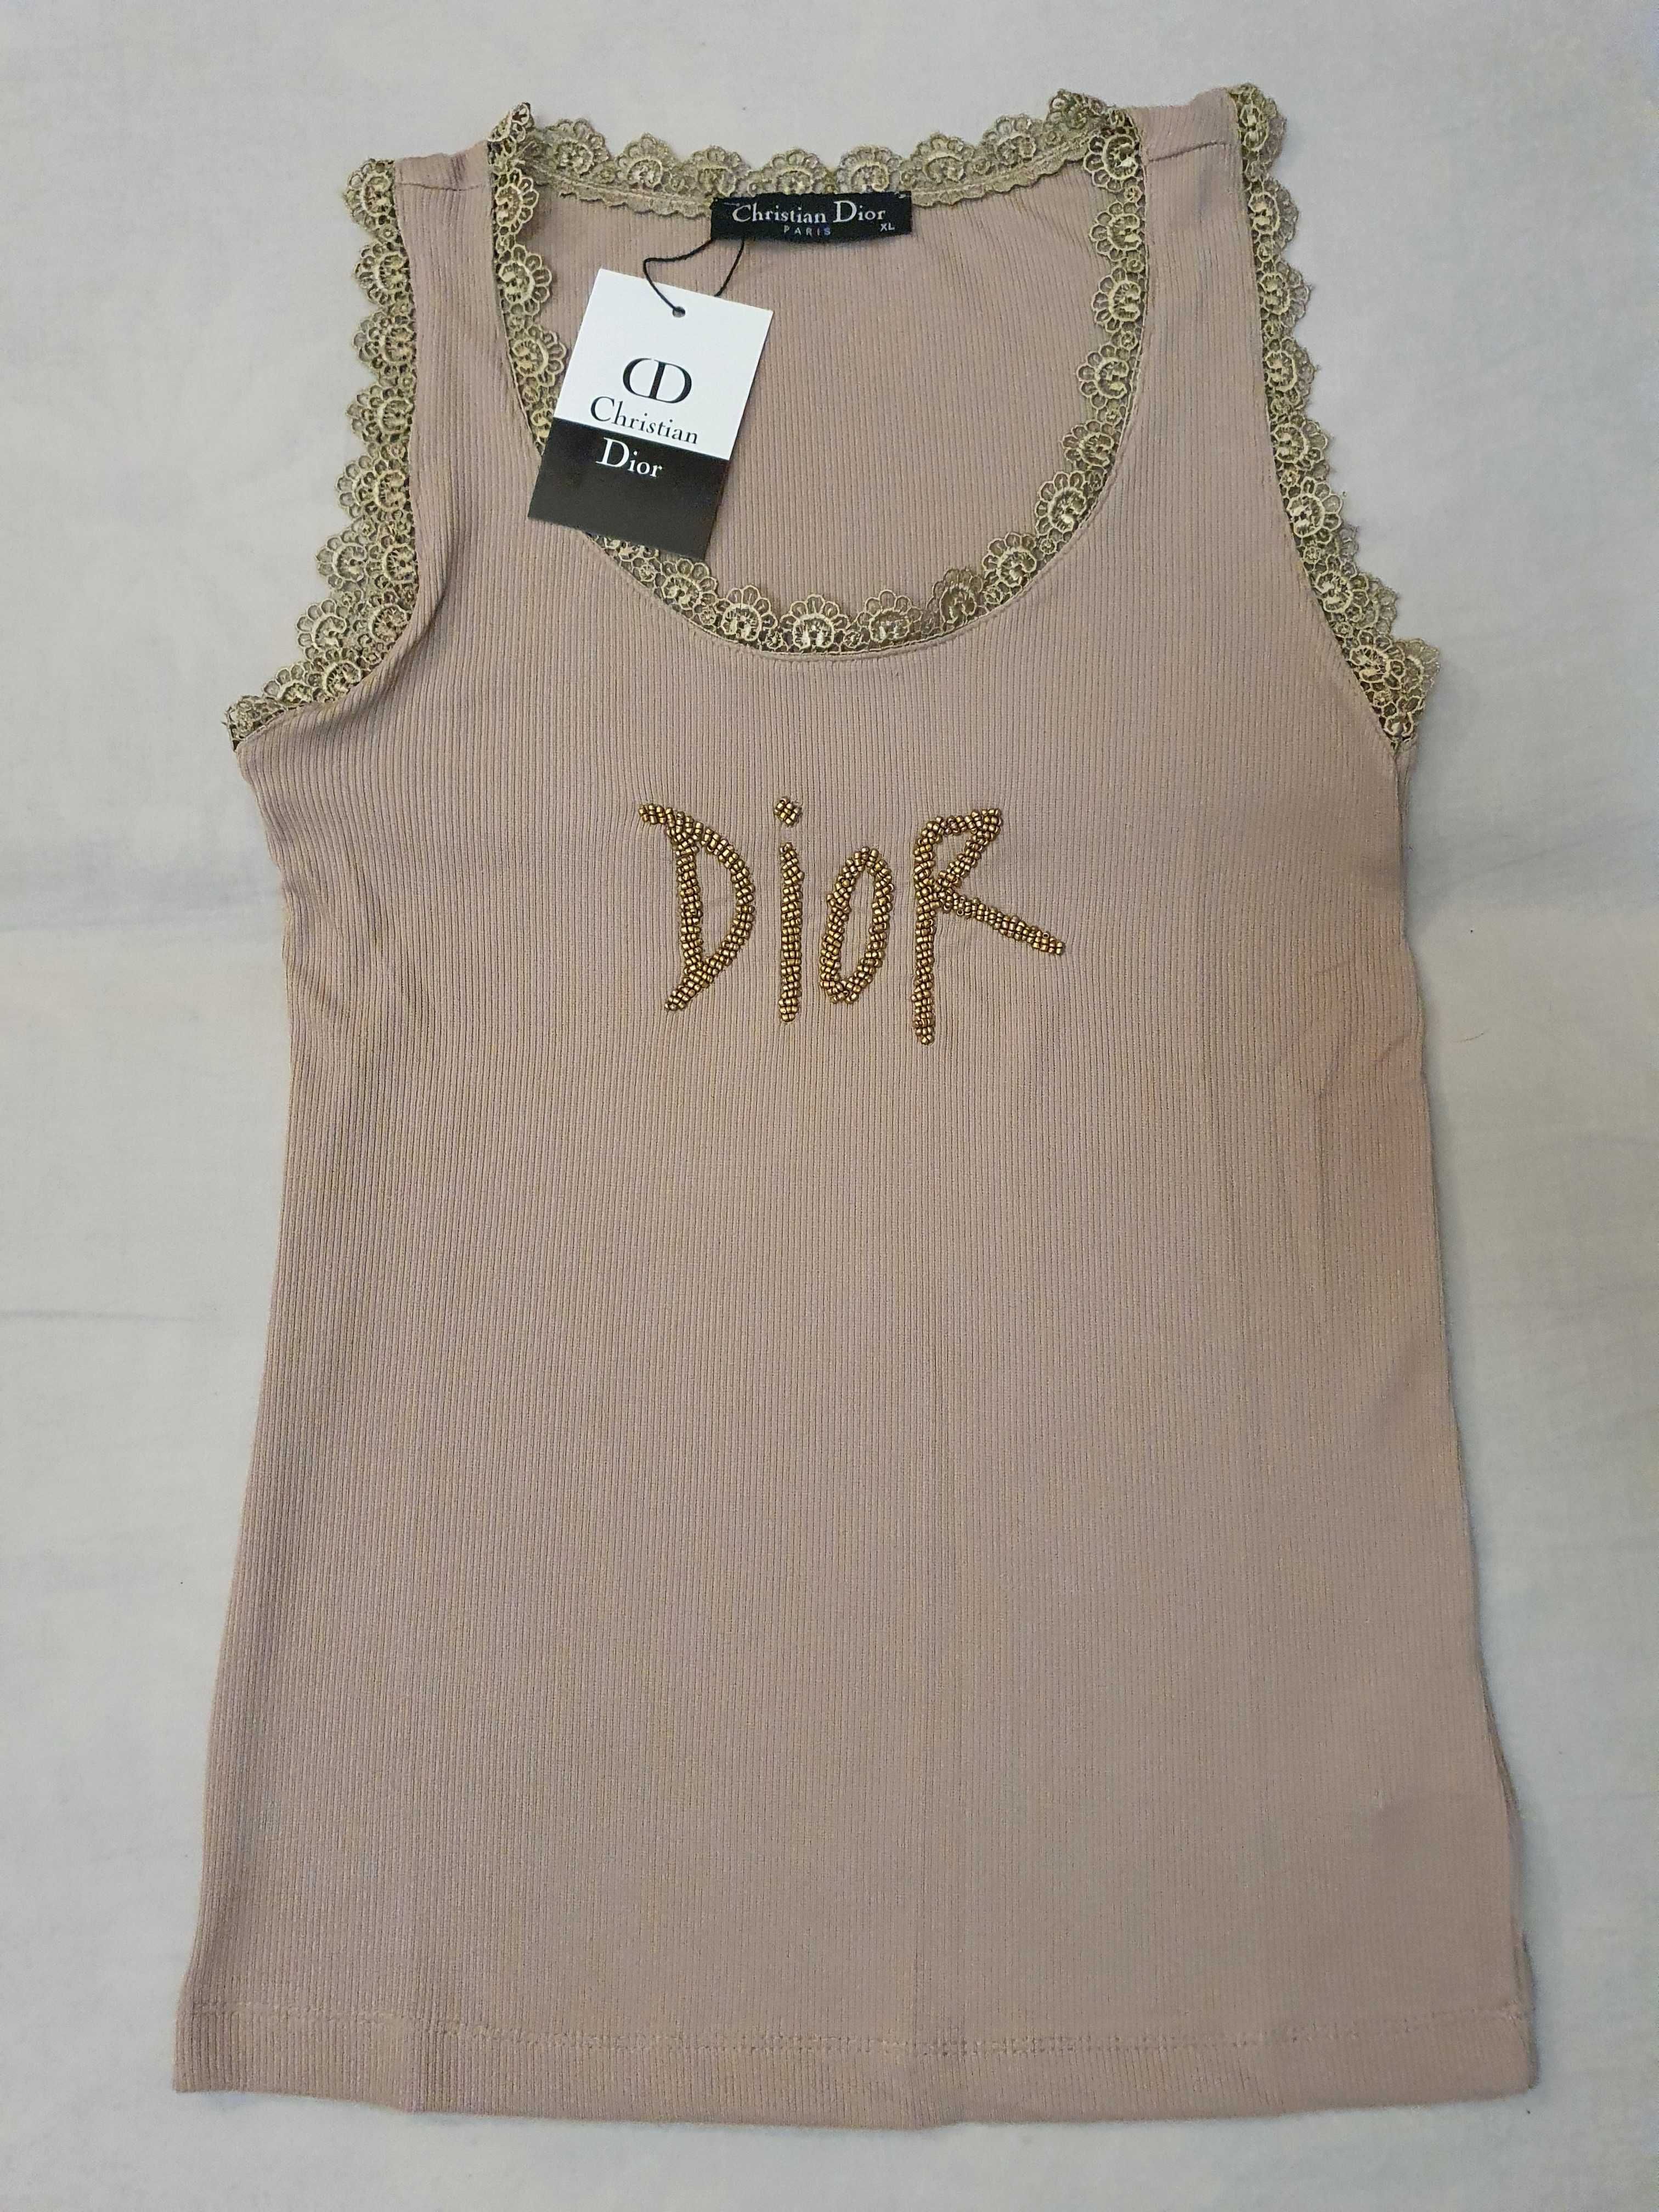 NOWA damska koszulka Christian Dior t-shirt bokserka CD bluzka xl